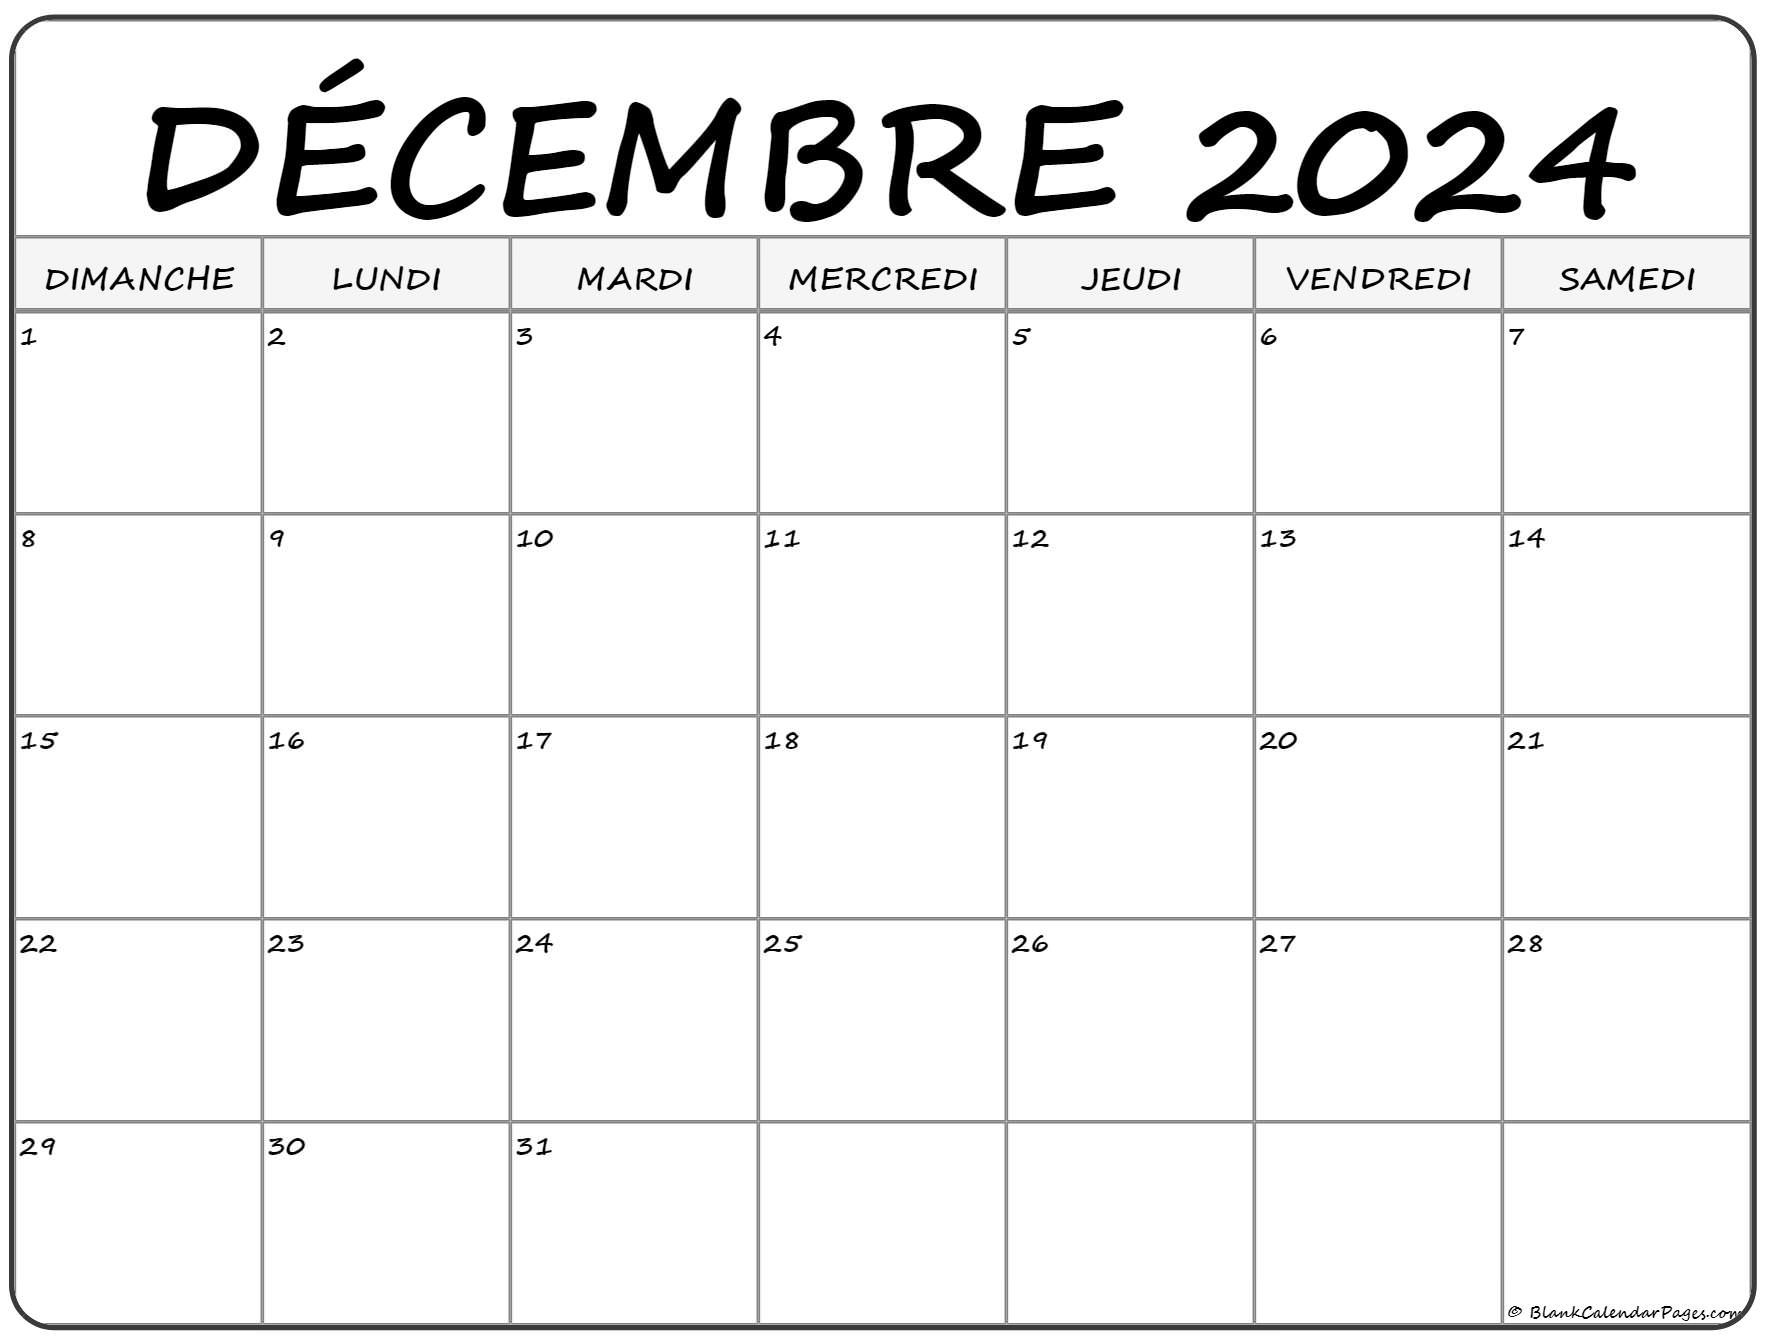 Calendrier 2022 Decembre décembre 2022 calendrier imprimable | Calendrier gratuit